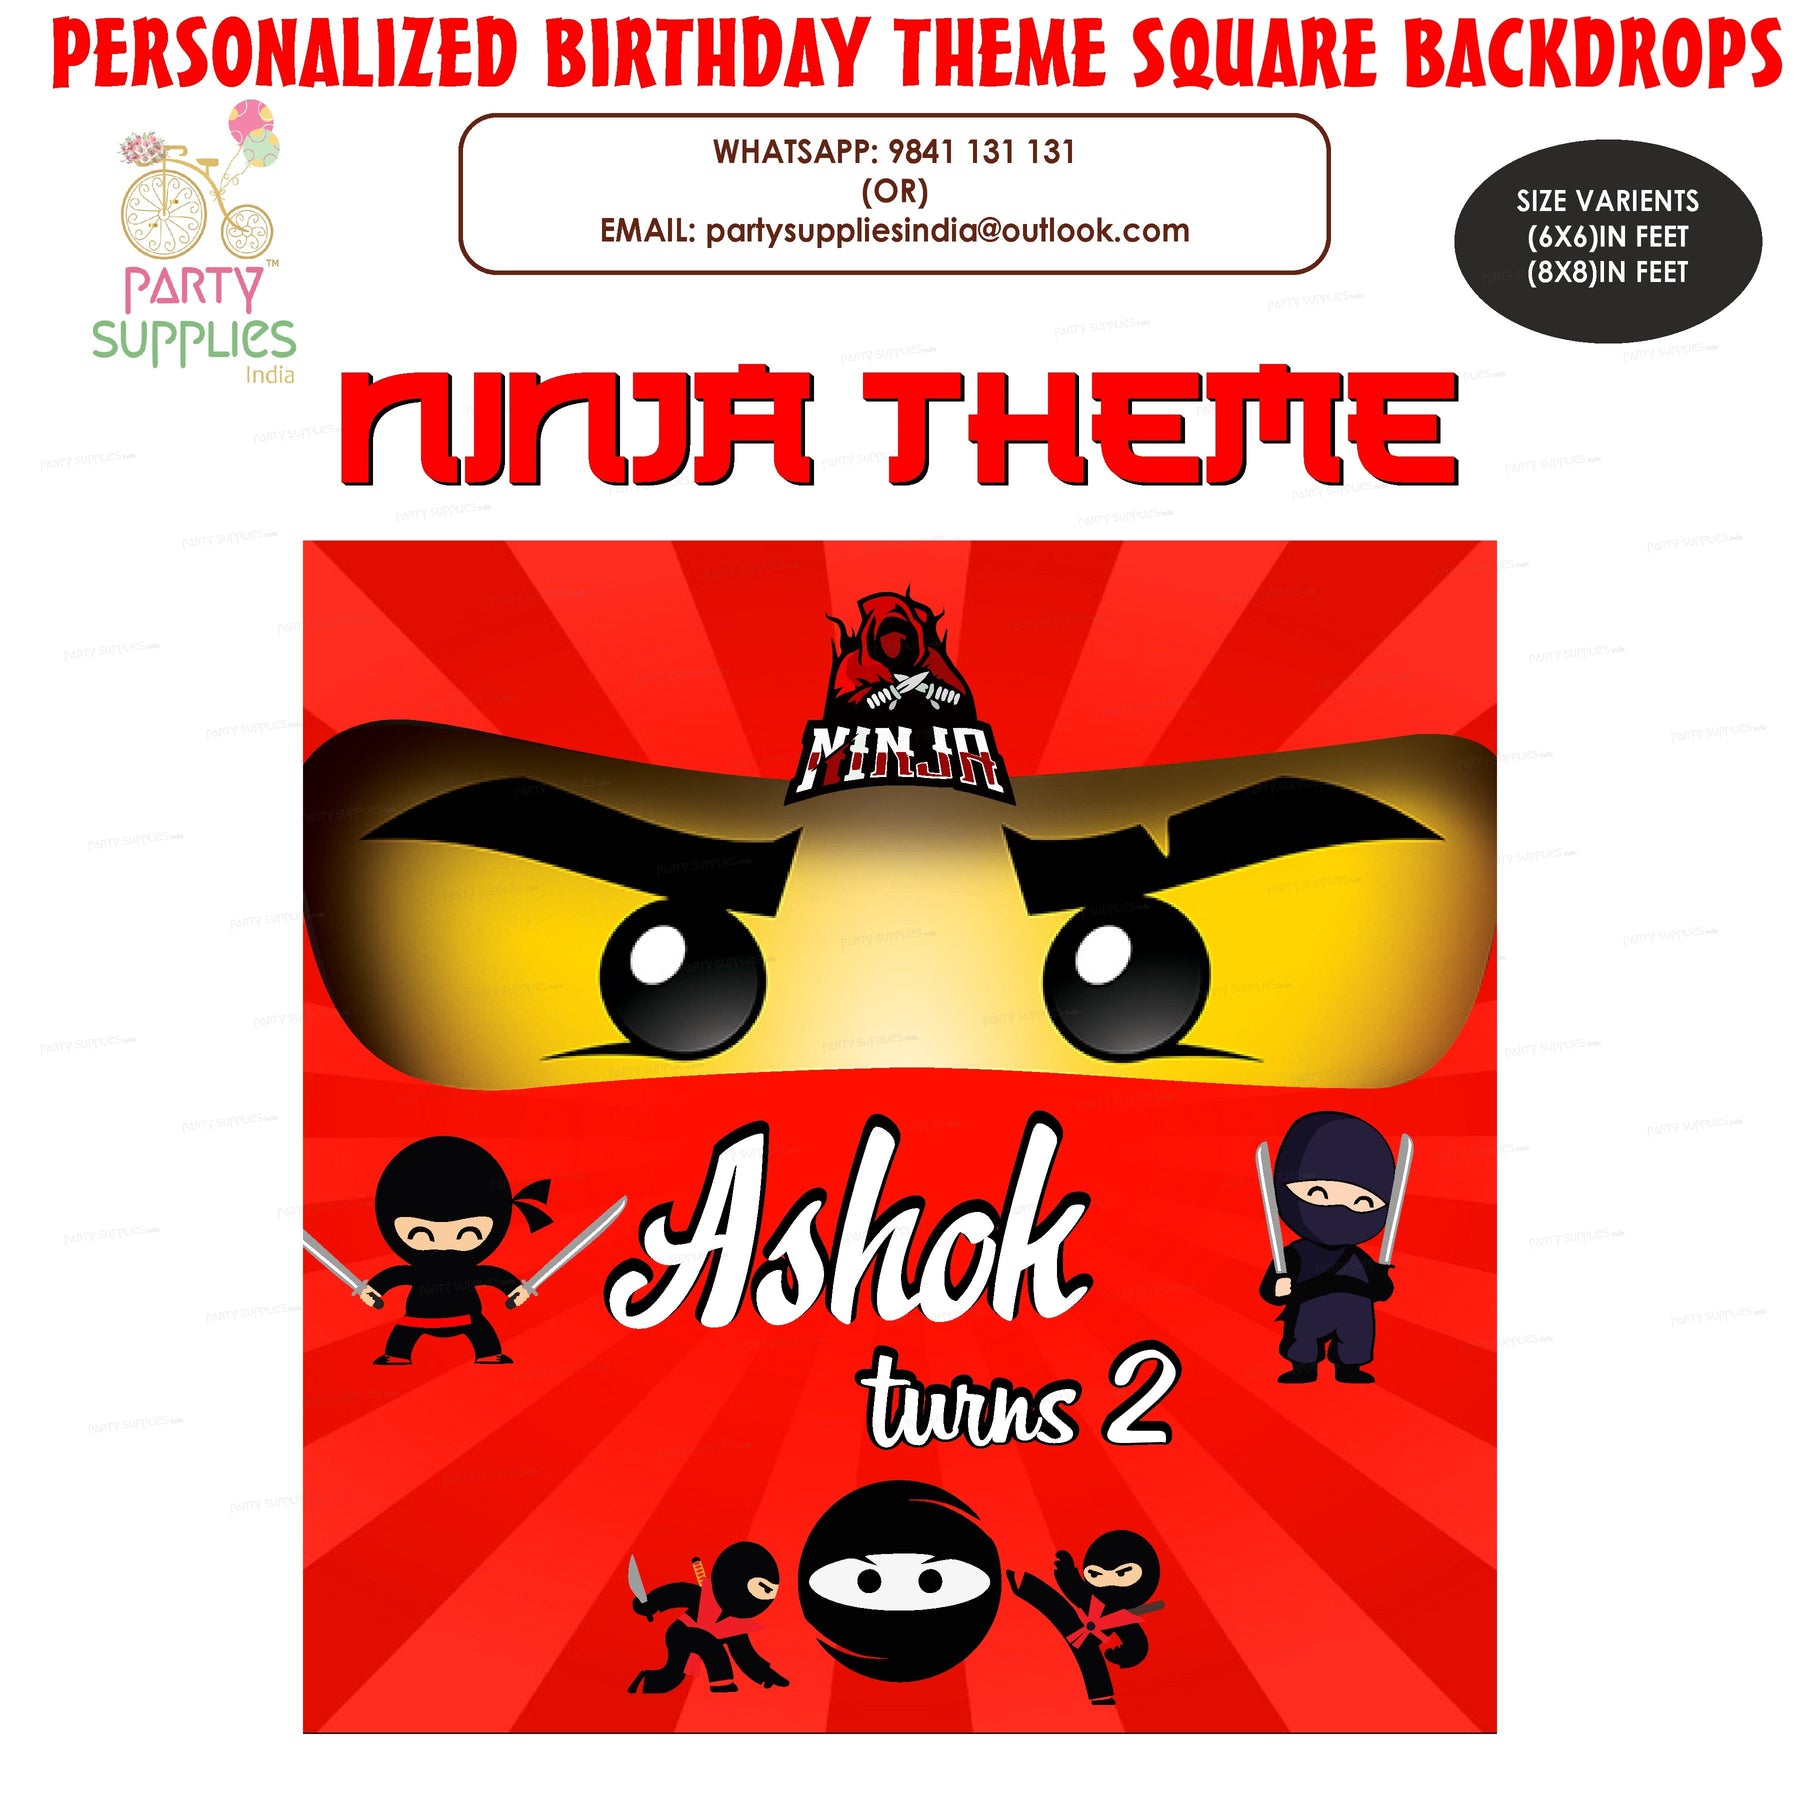 PSI Ninja Theme Customized Square Backdrop